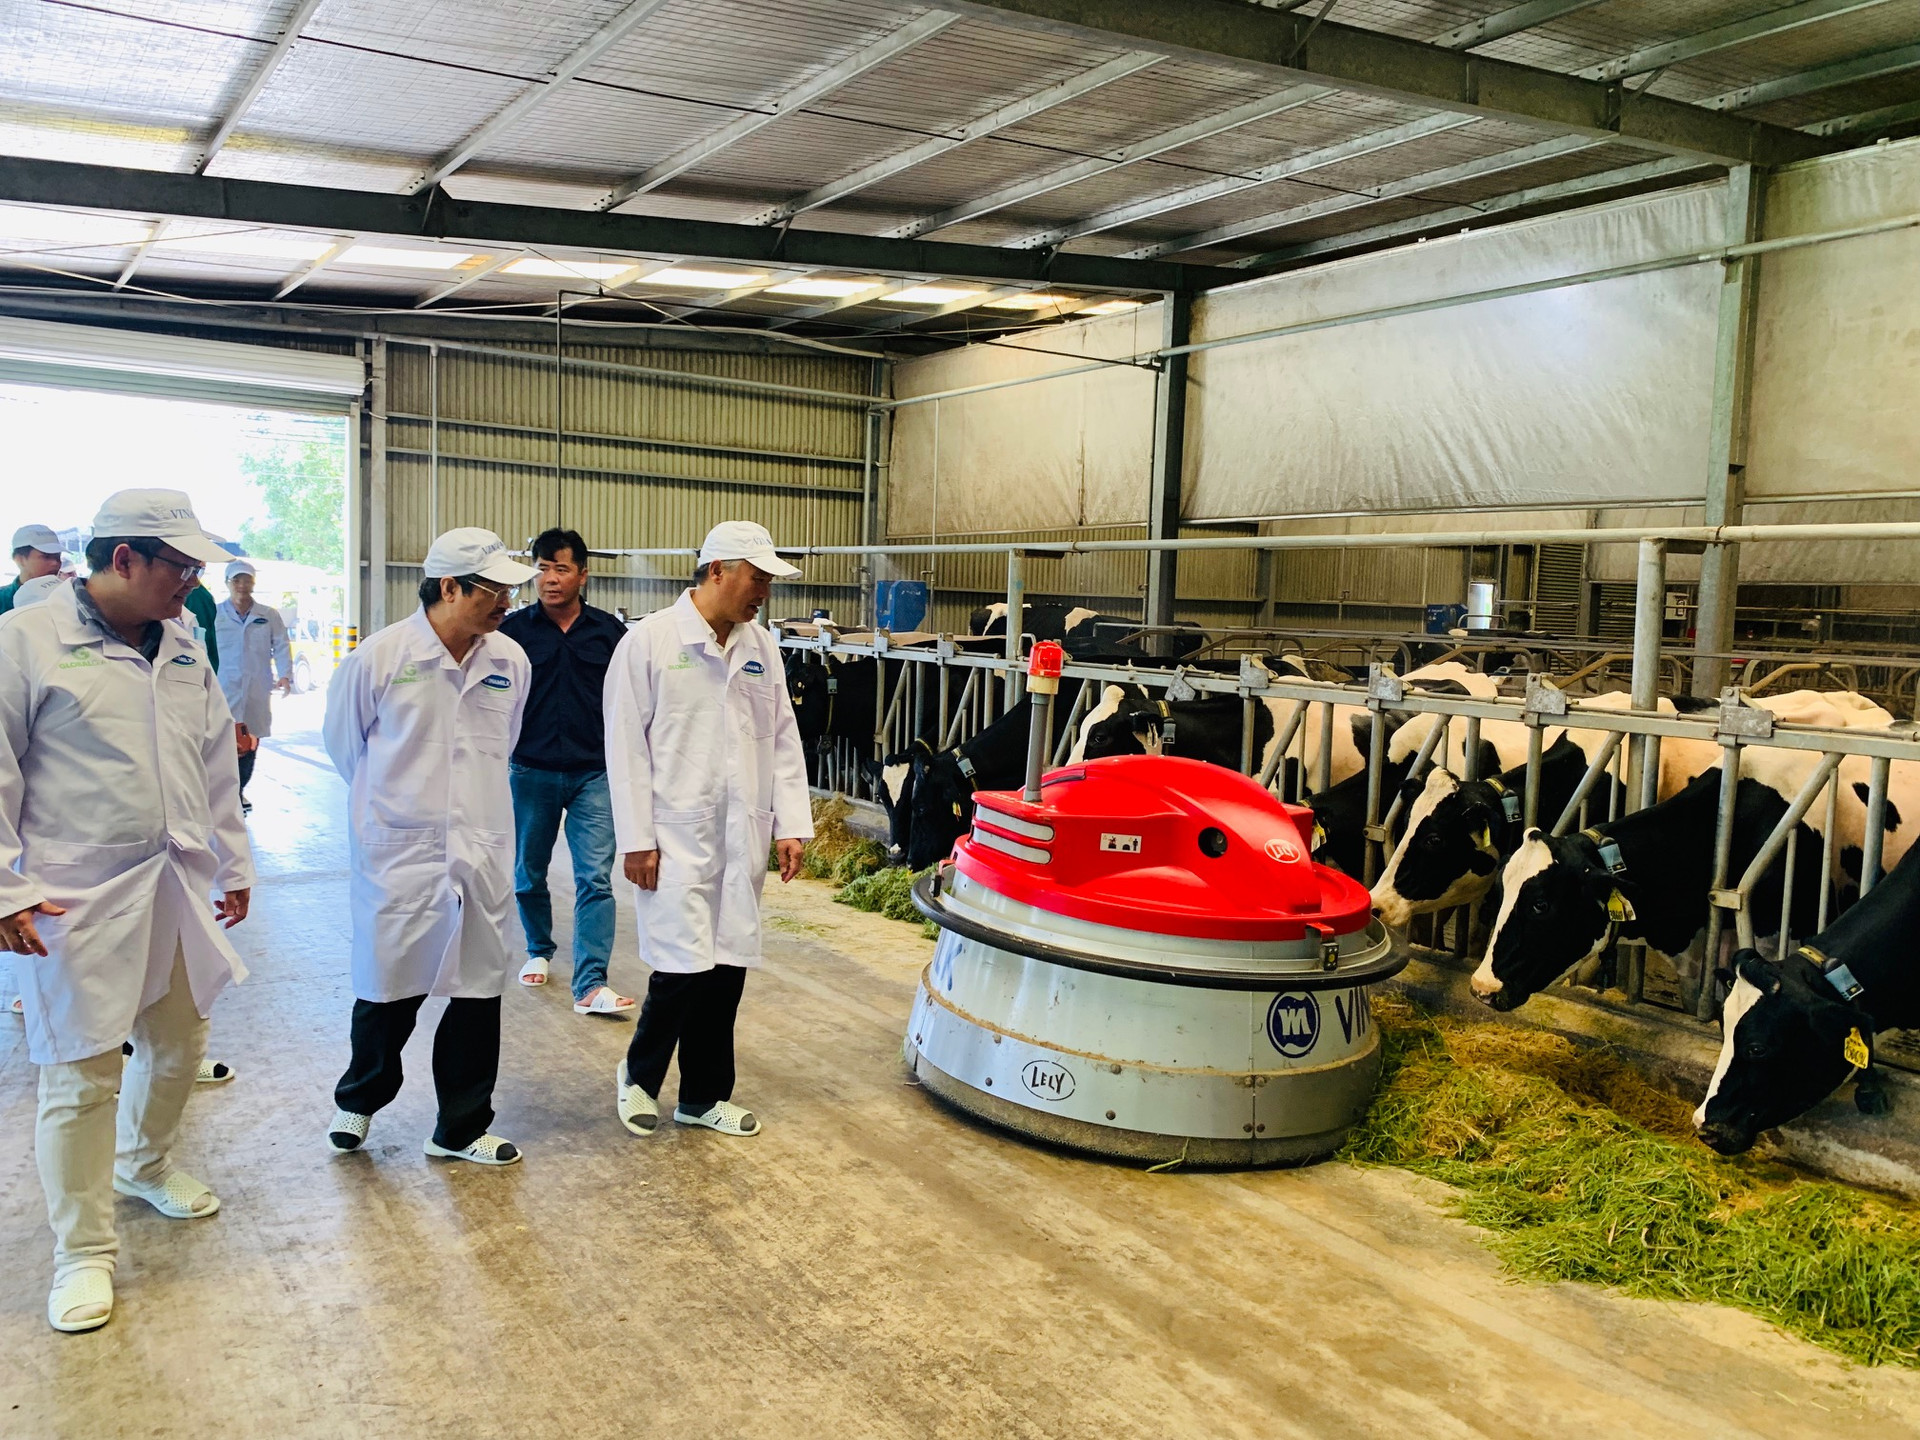 Trang trại bò sữa Vinnamilk trên toàn quốc sẽ là các hạt nhân để xây dựng an toàn dịch bệnh theo quy định quốc tế